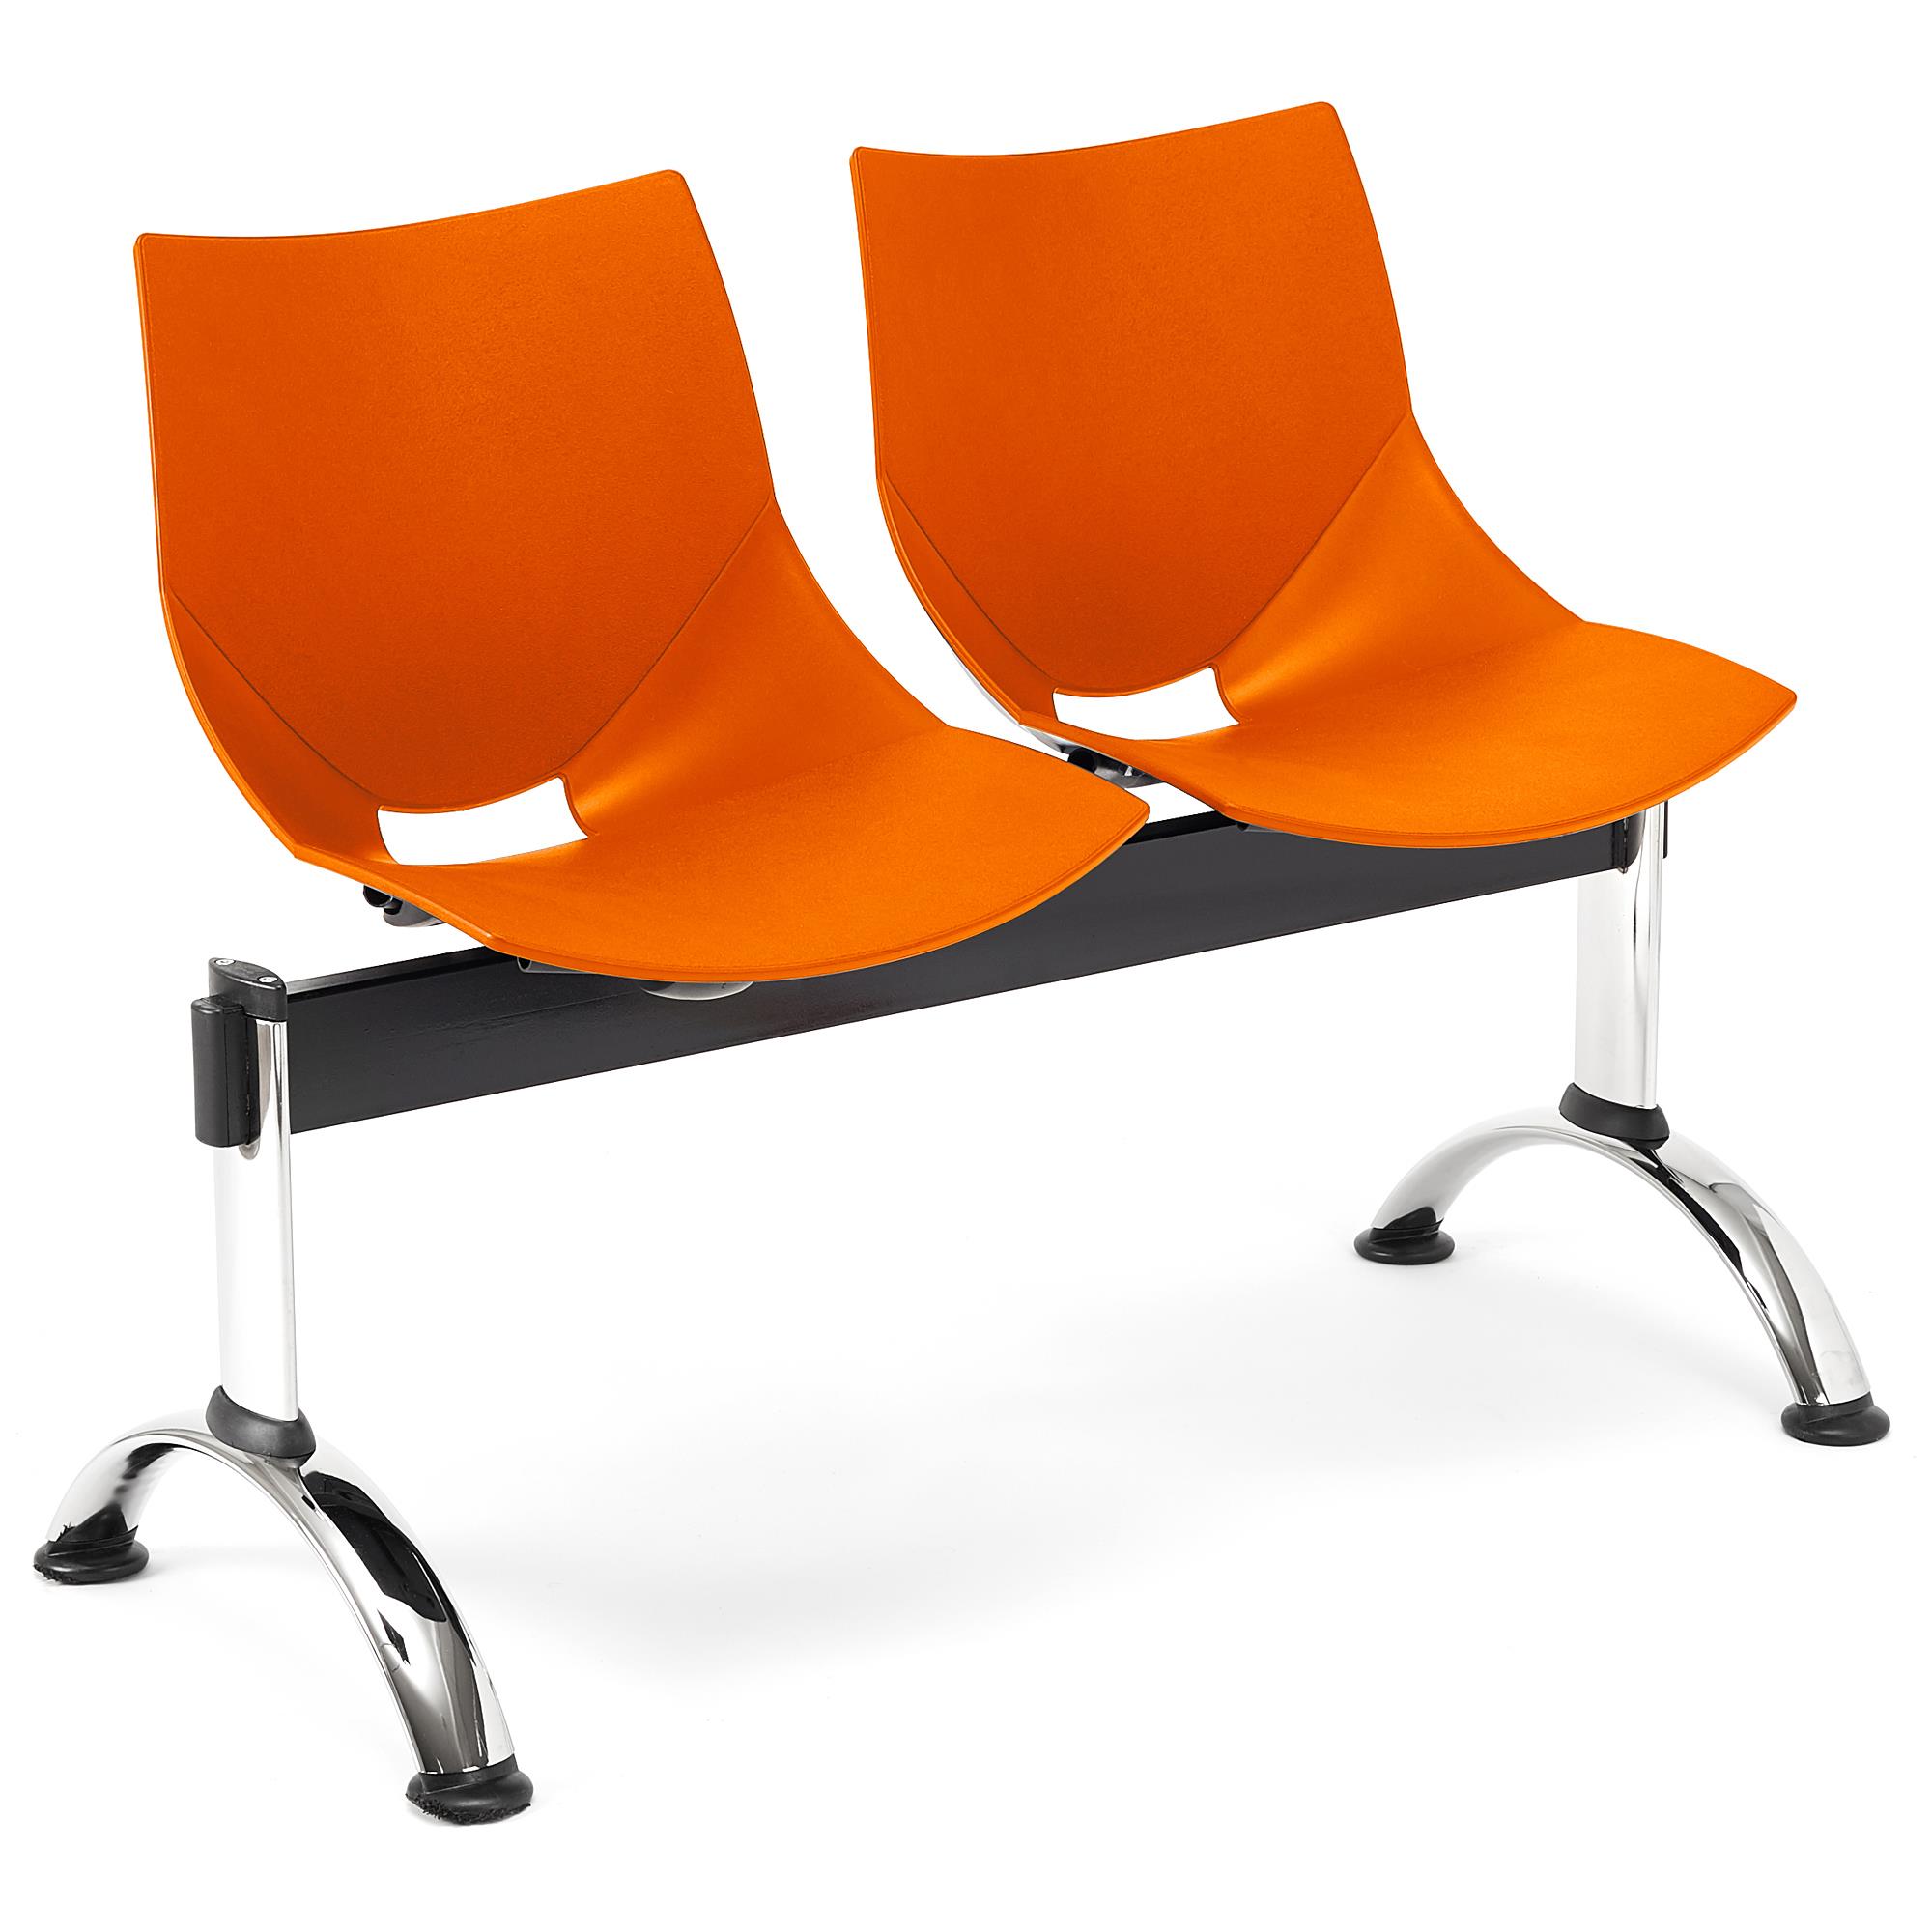 Banc salle d'attente 2 sièges AMIR, Structure en Métal, Plastique Orange